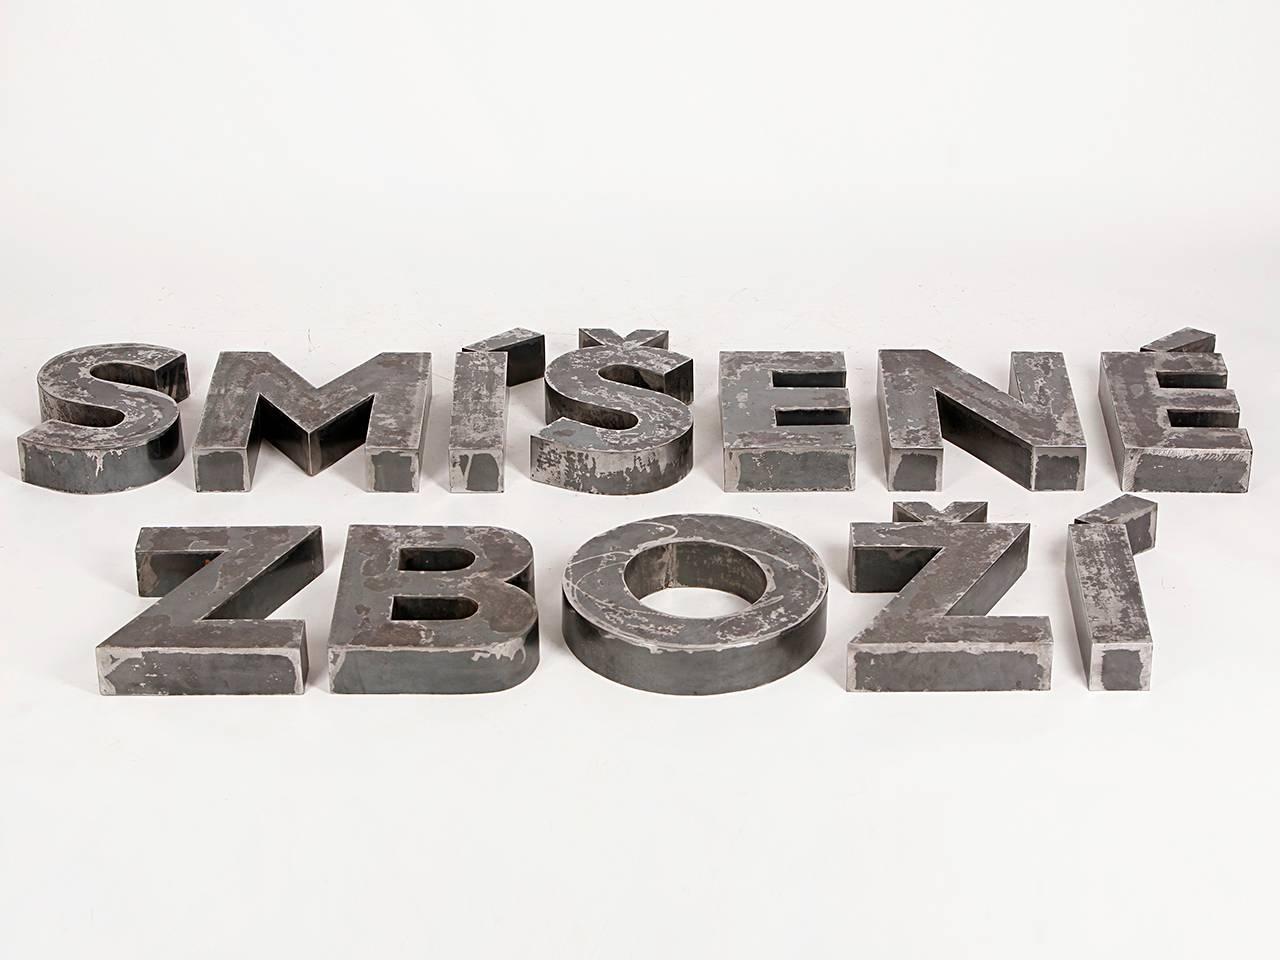 Dieser Satz von Ladenbuchstaben ist aus Stahlblech gefertigt und buchstabiert die tschechischen Worte 